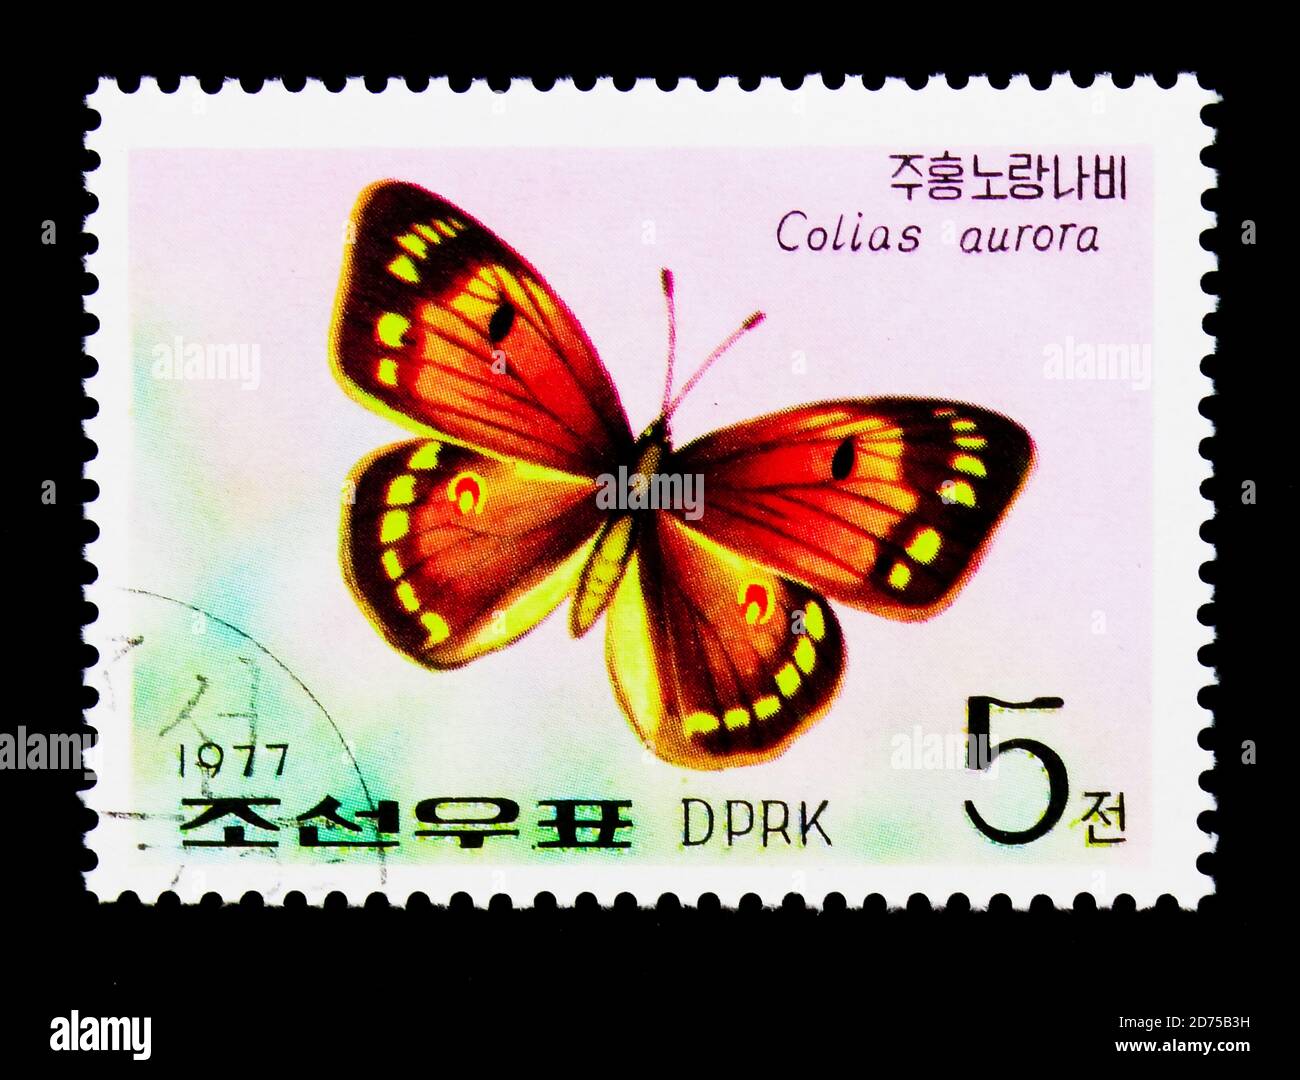 MOSCOU, RUSSIE - 25 NOVEMBRE 2017 : un timbre imprimé en république populaire démocratique de Corée montre Butterfly (Colias aurora), série, vers 1977 Banque D'Images